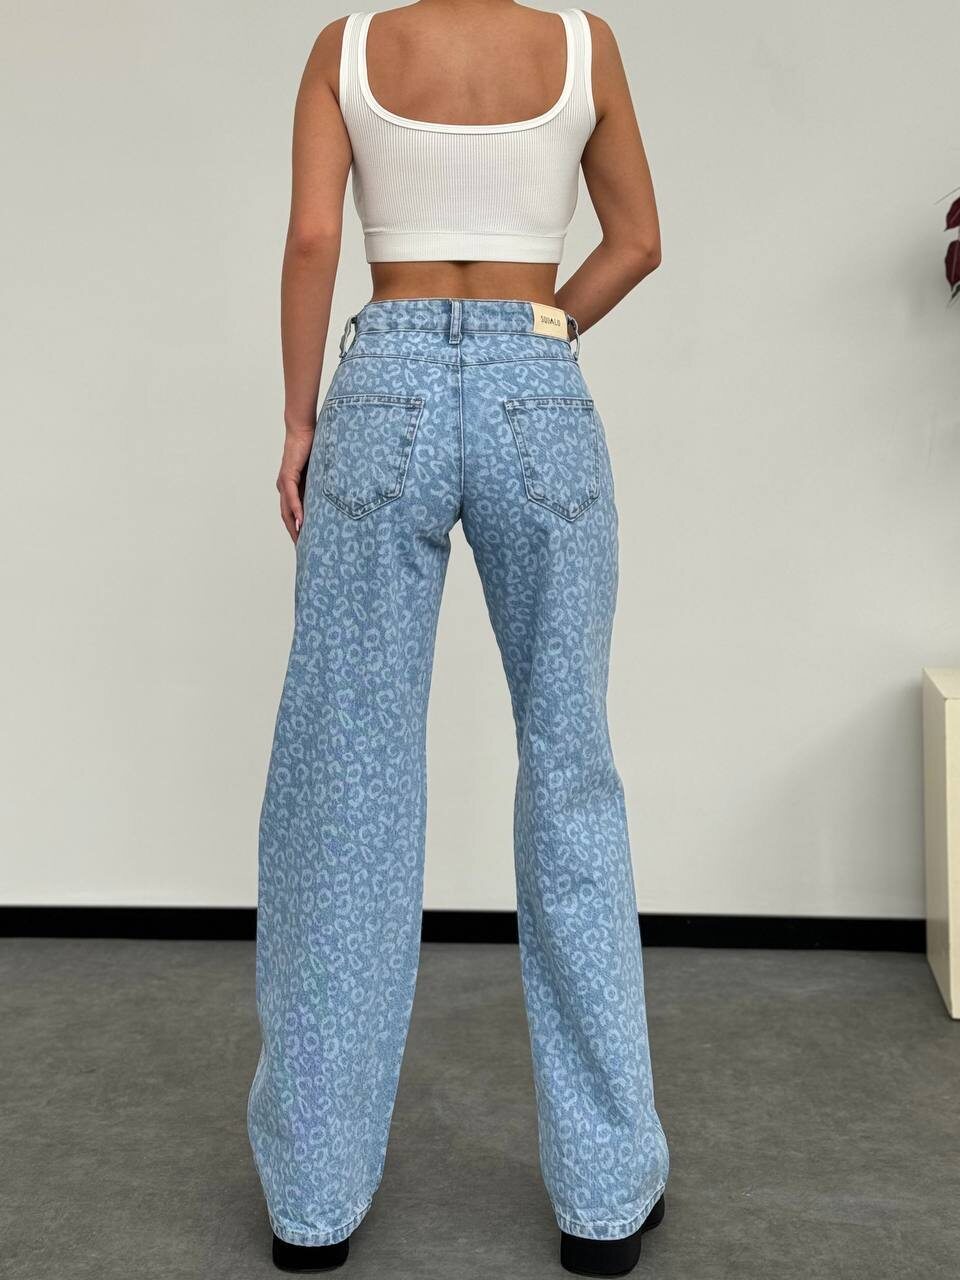 Брюки, самые трендовые джинсы  
качество — lux denim 
ткань — zara jeans 
производство — turkey 
размеры:  25–26–27–28
                          2.   2.   2.    1.    
в упаковке — 7 штук
длина — 110 см 
цвет — лео арт.490685